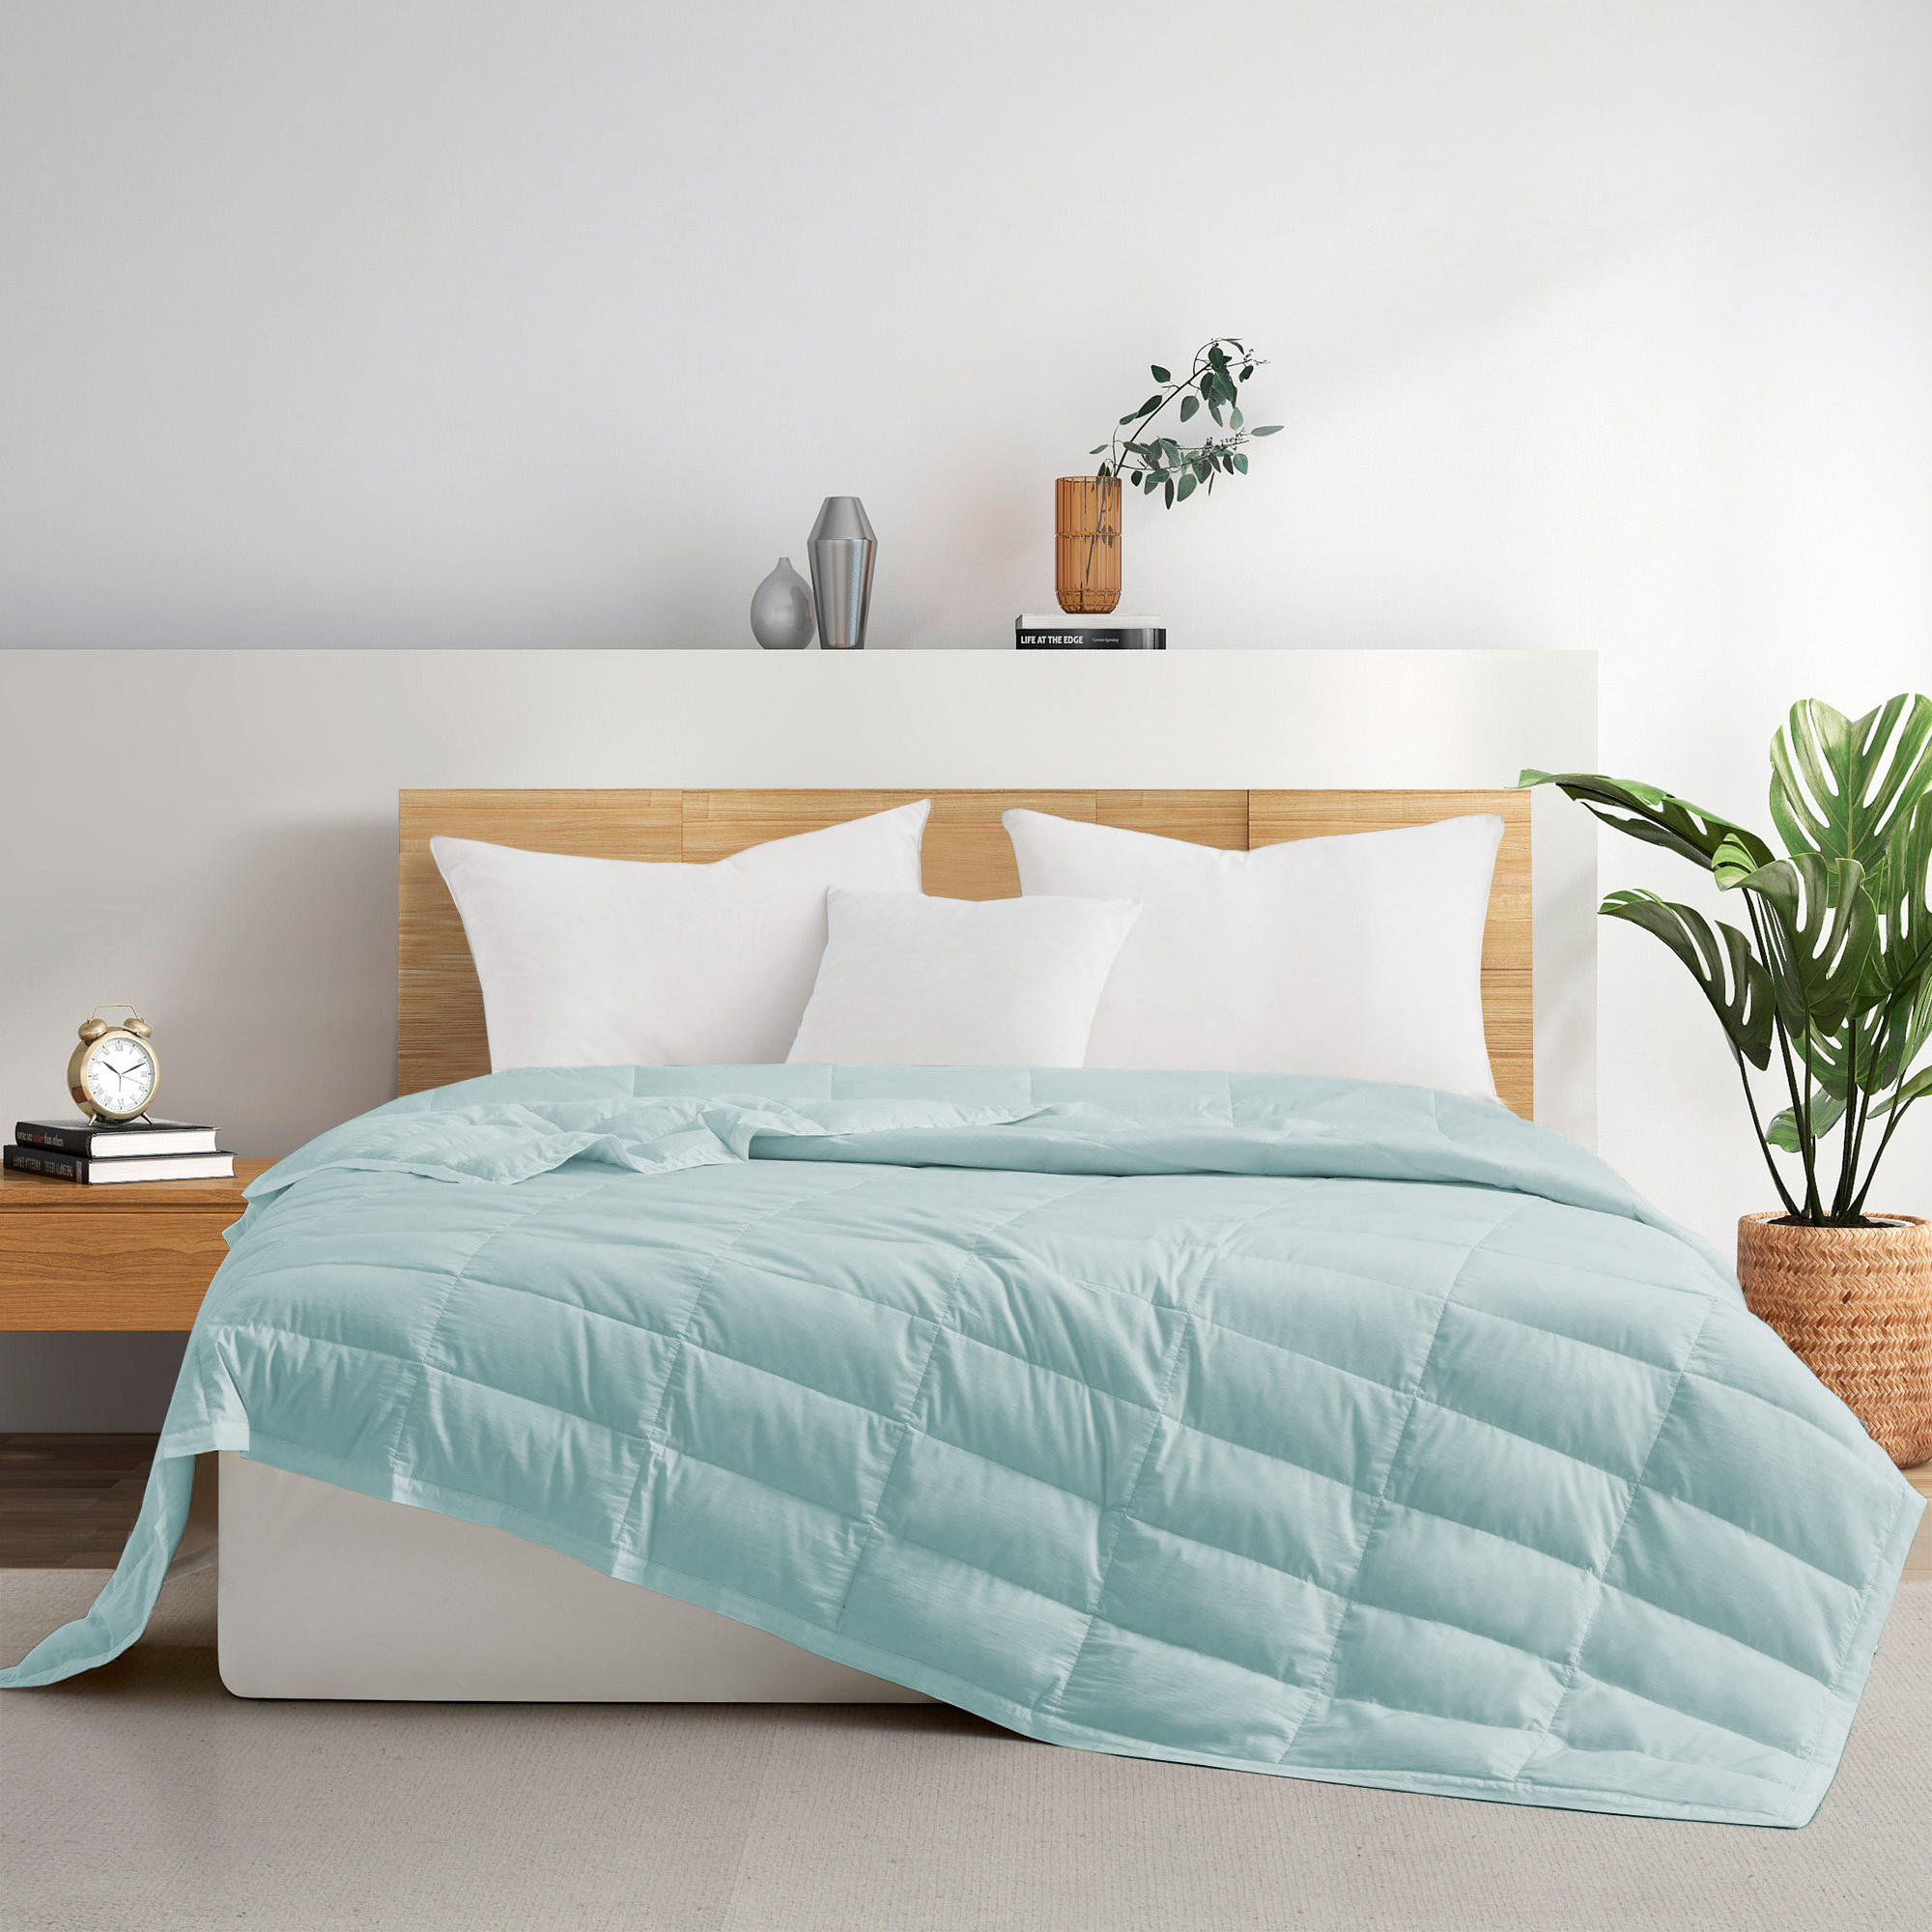 TENCELâ¢ Lyocell Lightweight Cooling Down Blanket-Luxurious Comfort Summer Blanket - Dark Gray, Full/Queen